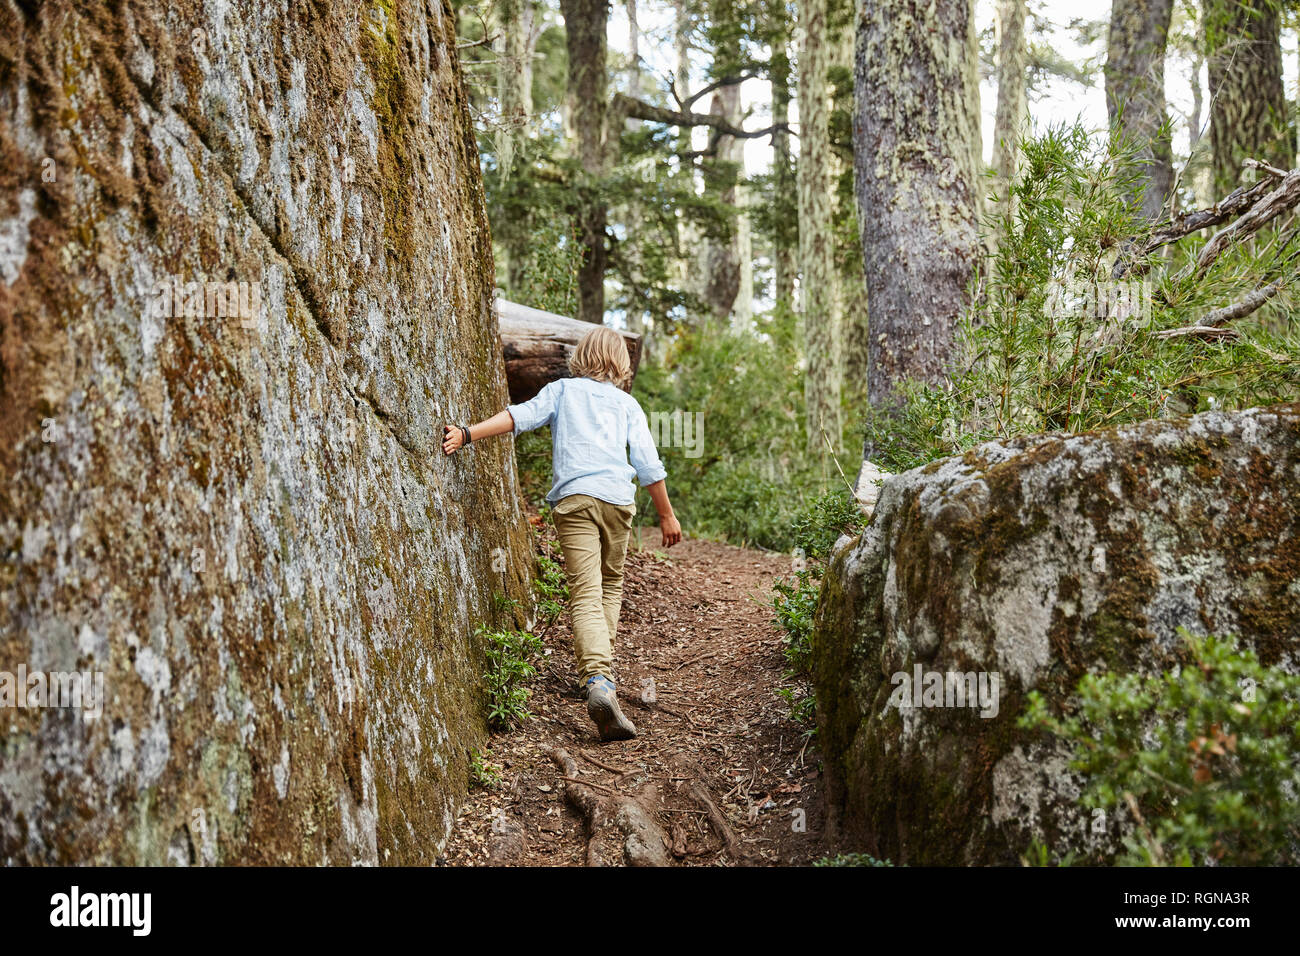 Le Chili, le Parc National Nahuelbuta Puren, garçon, passant dans une forêt d'Araucarias boulder Banque D'Images